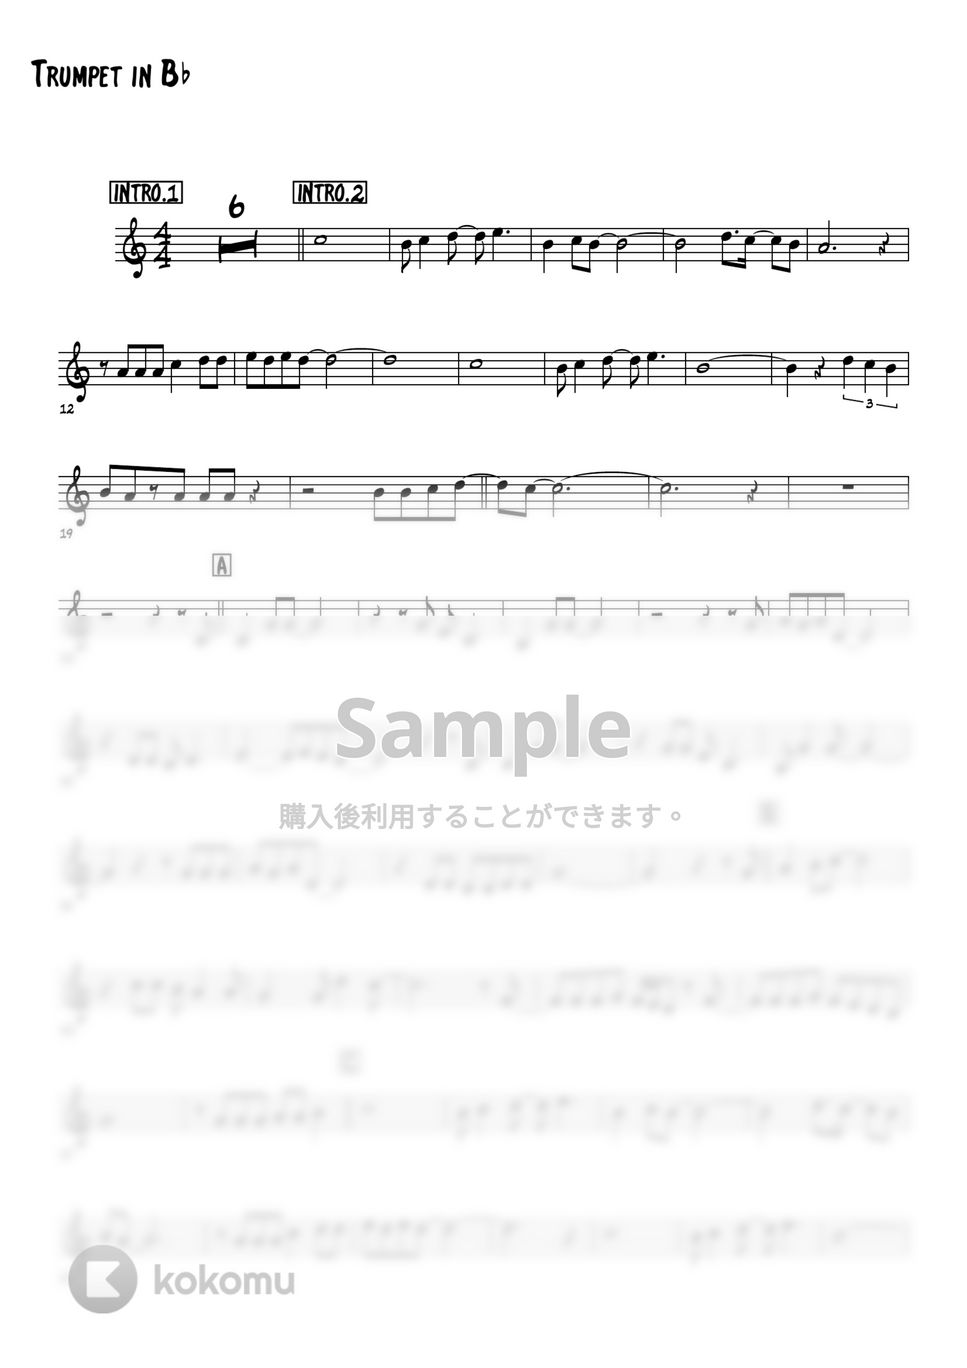 松田聖子 - 青い珊瑚礁 (メロディー楽譜) by 高田将利